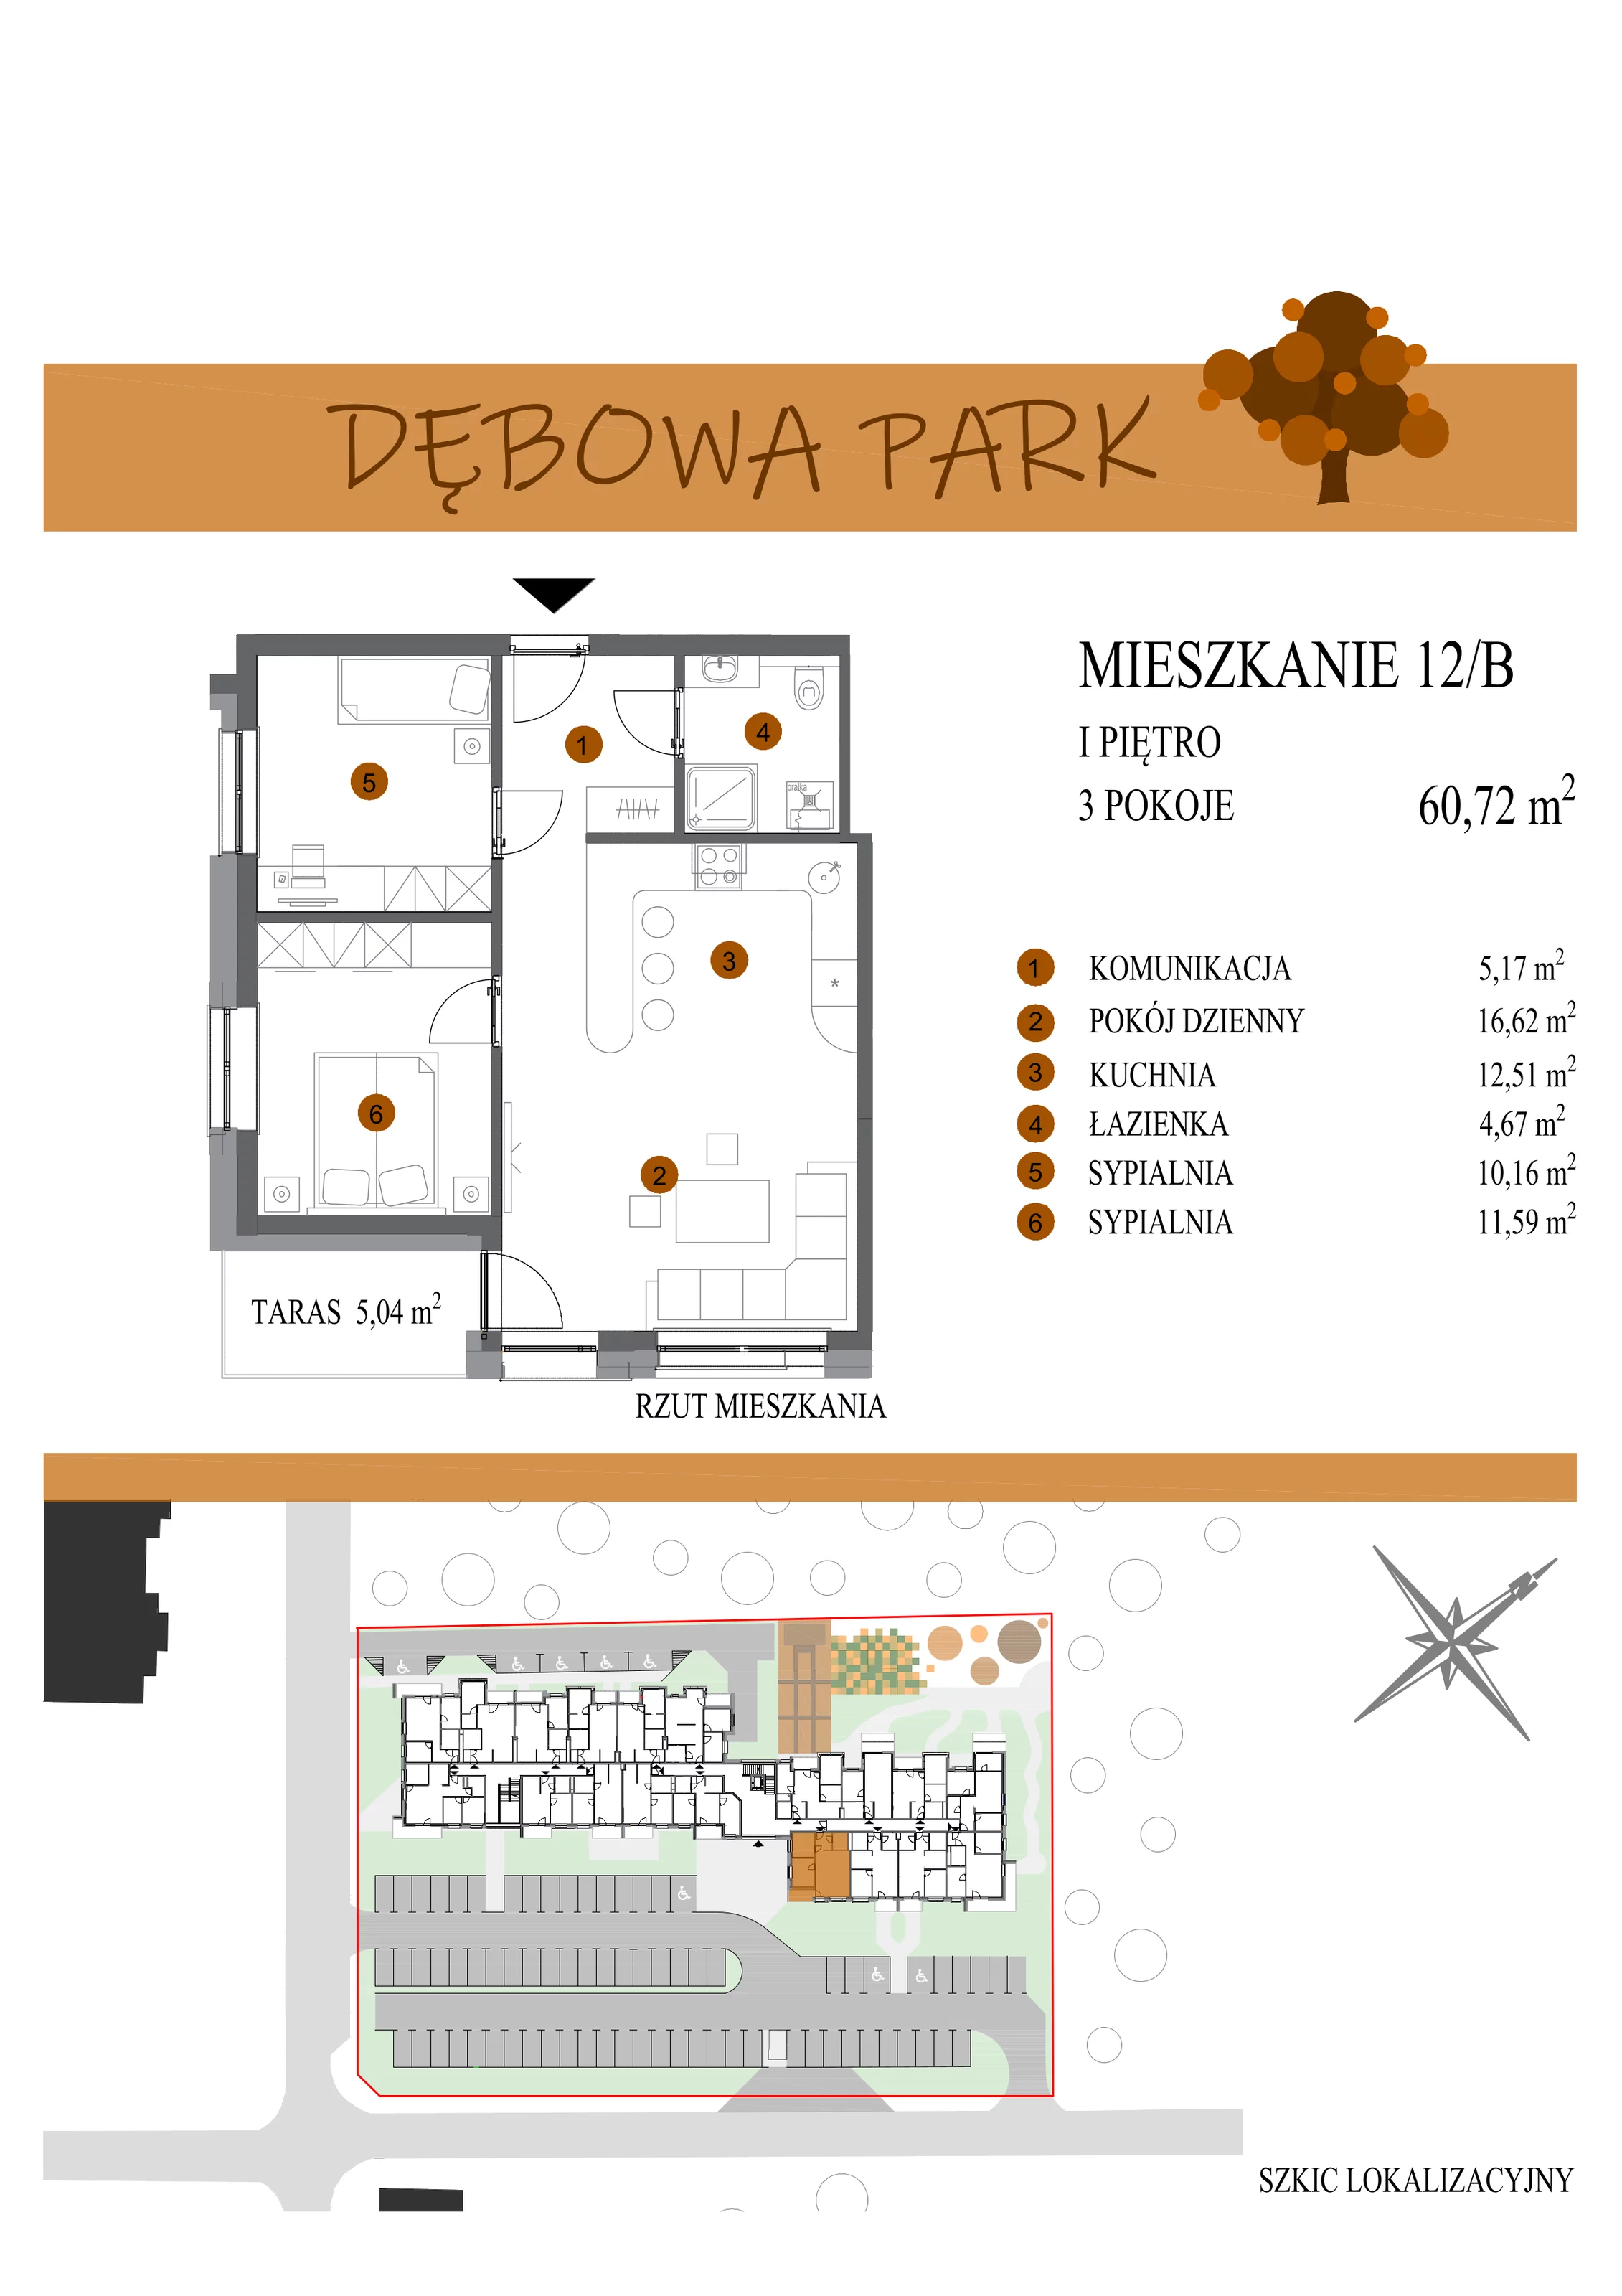 Mieszkanie 60,72 m², piętro 1, oferta nr 12B, Dębowa Park, Gogolin, ul. Dębowa